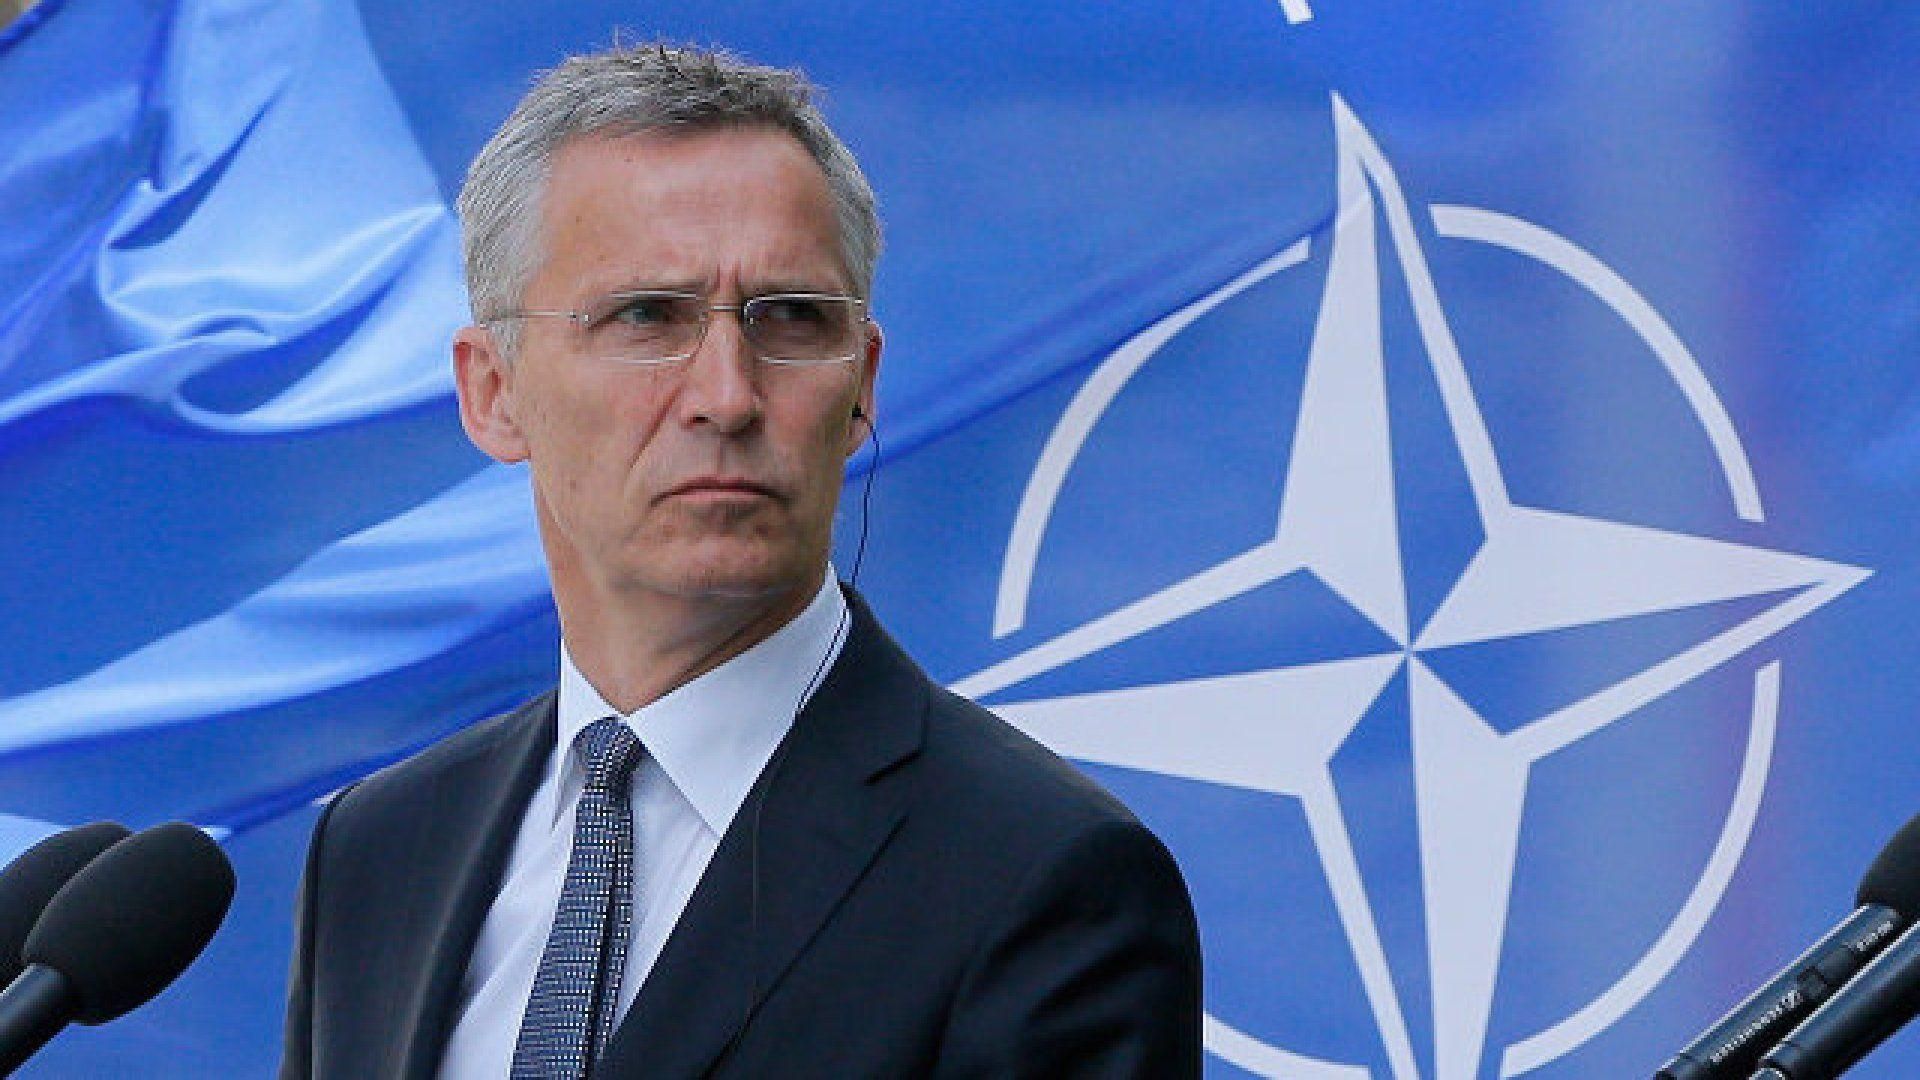 Місія НАТО в Іраку буде зупинена: результати екстреного засідання Ради Альянсу